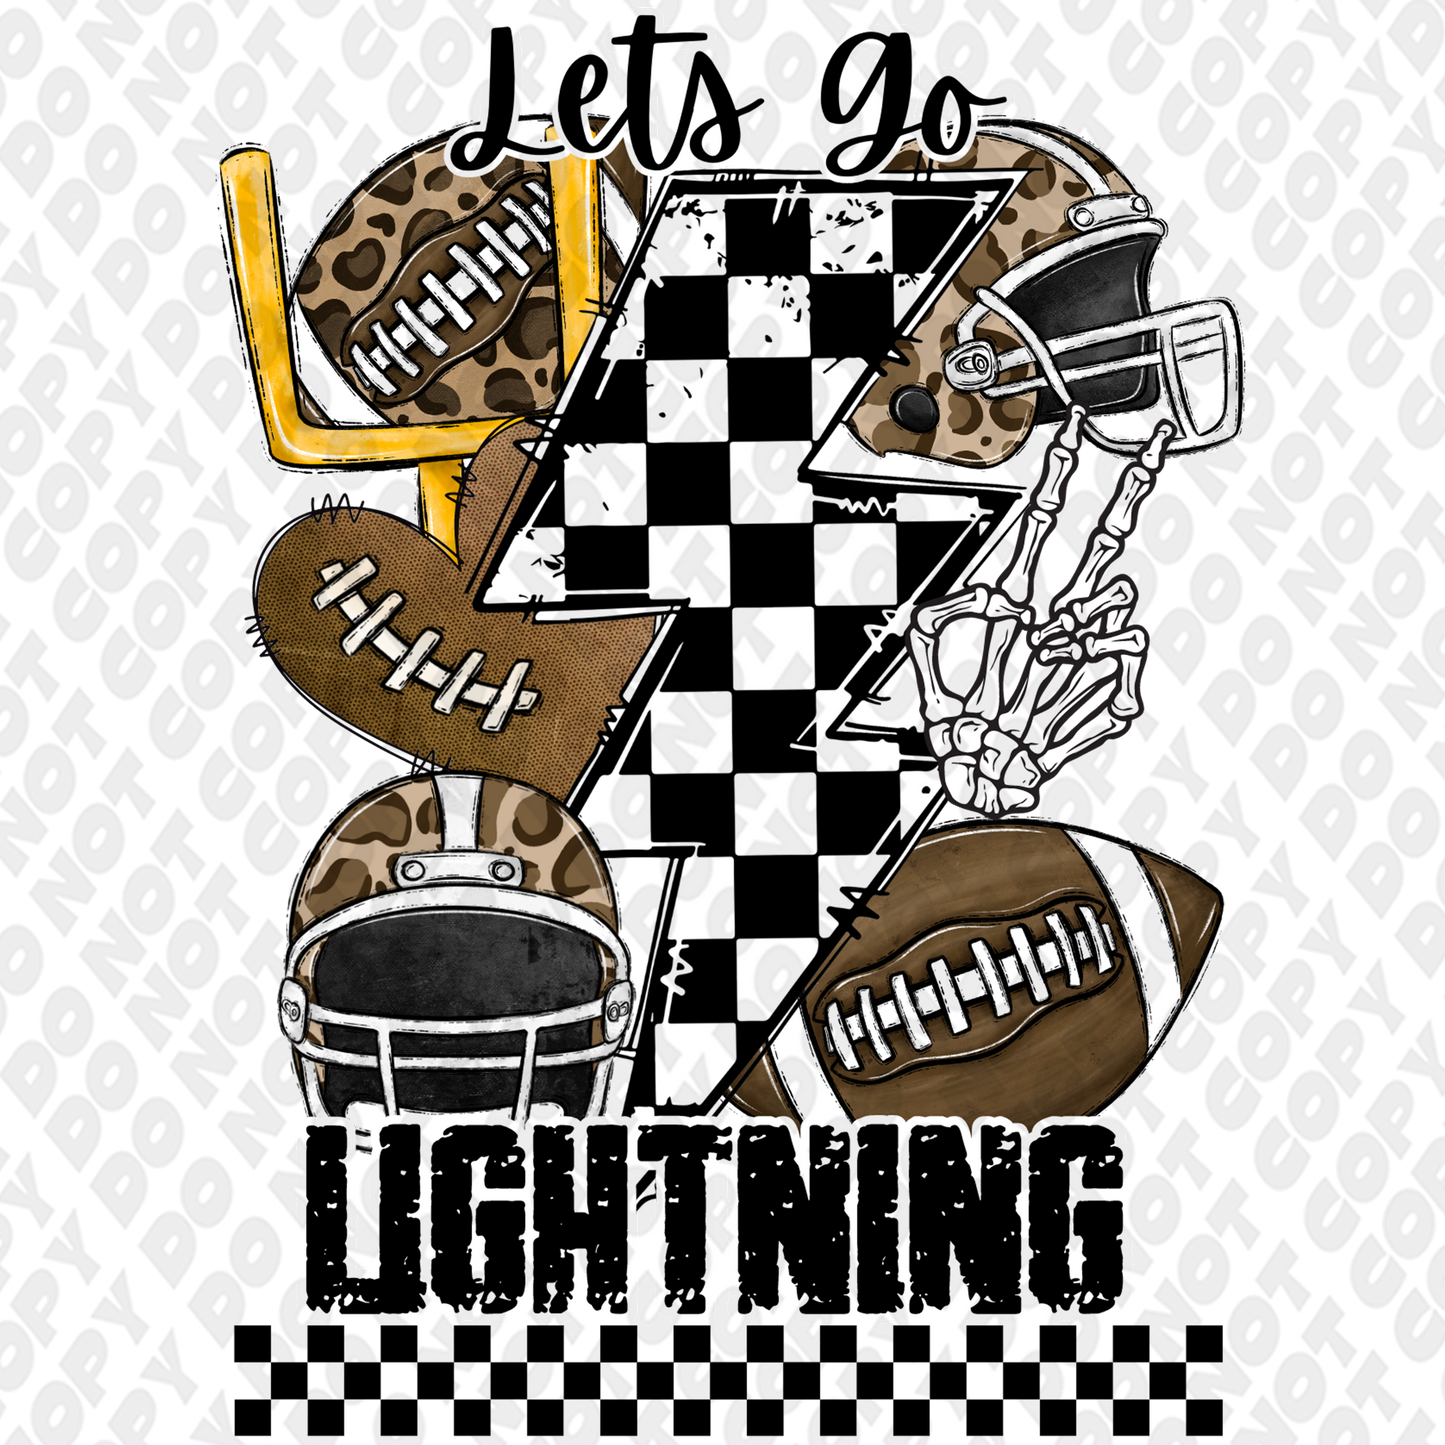 Let's go Lightning